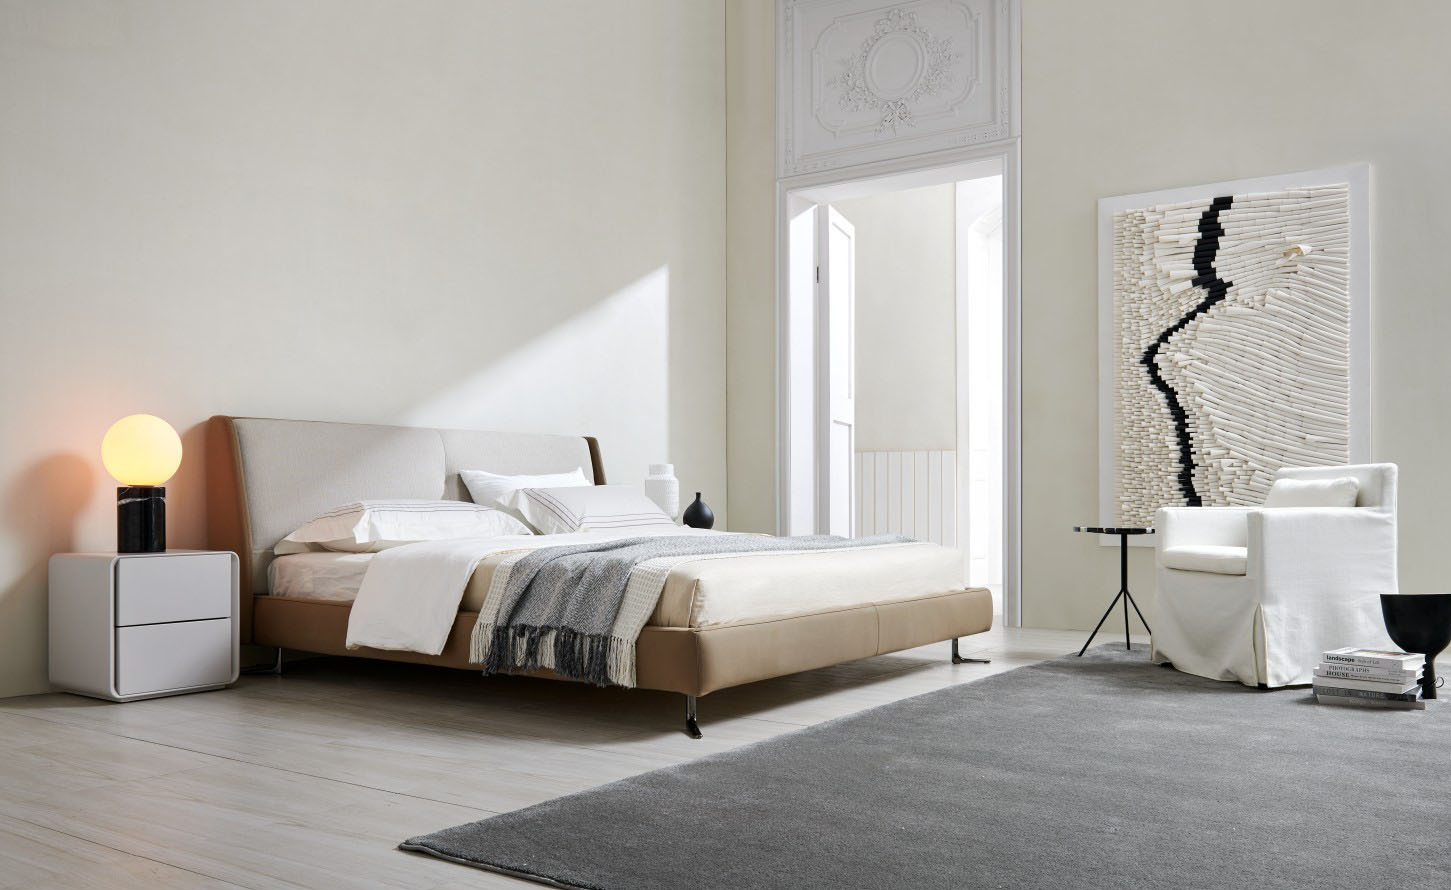 Luxury Modern Bedroom Furniture